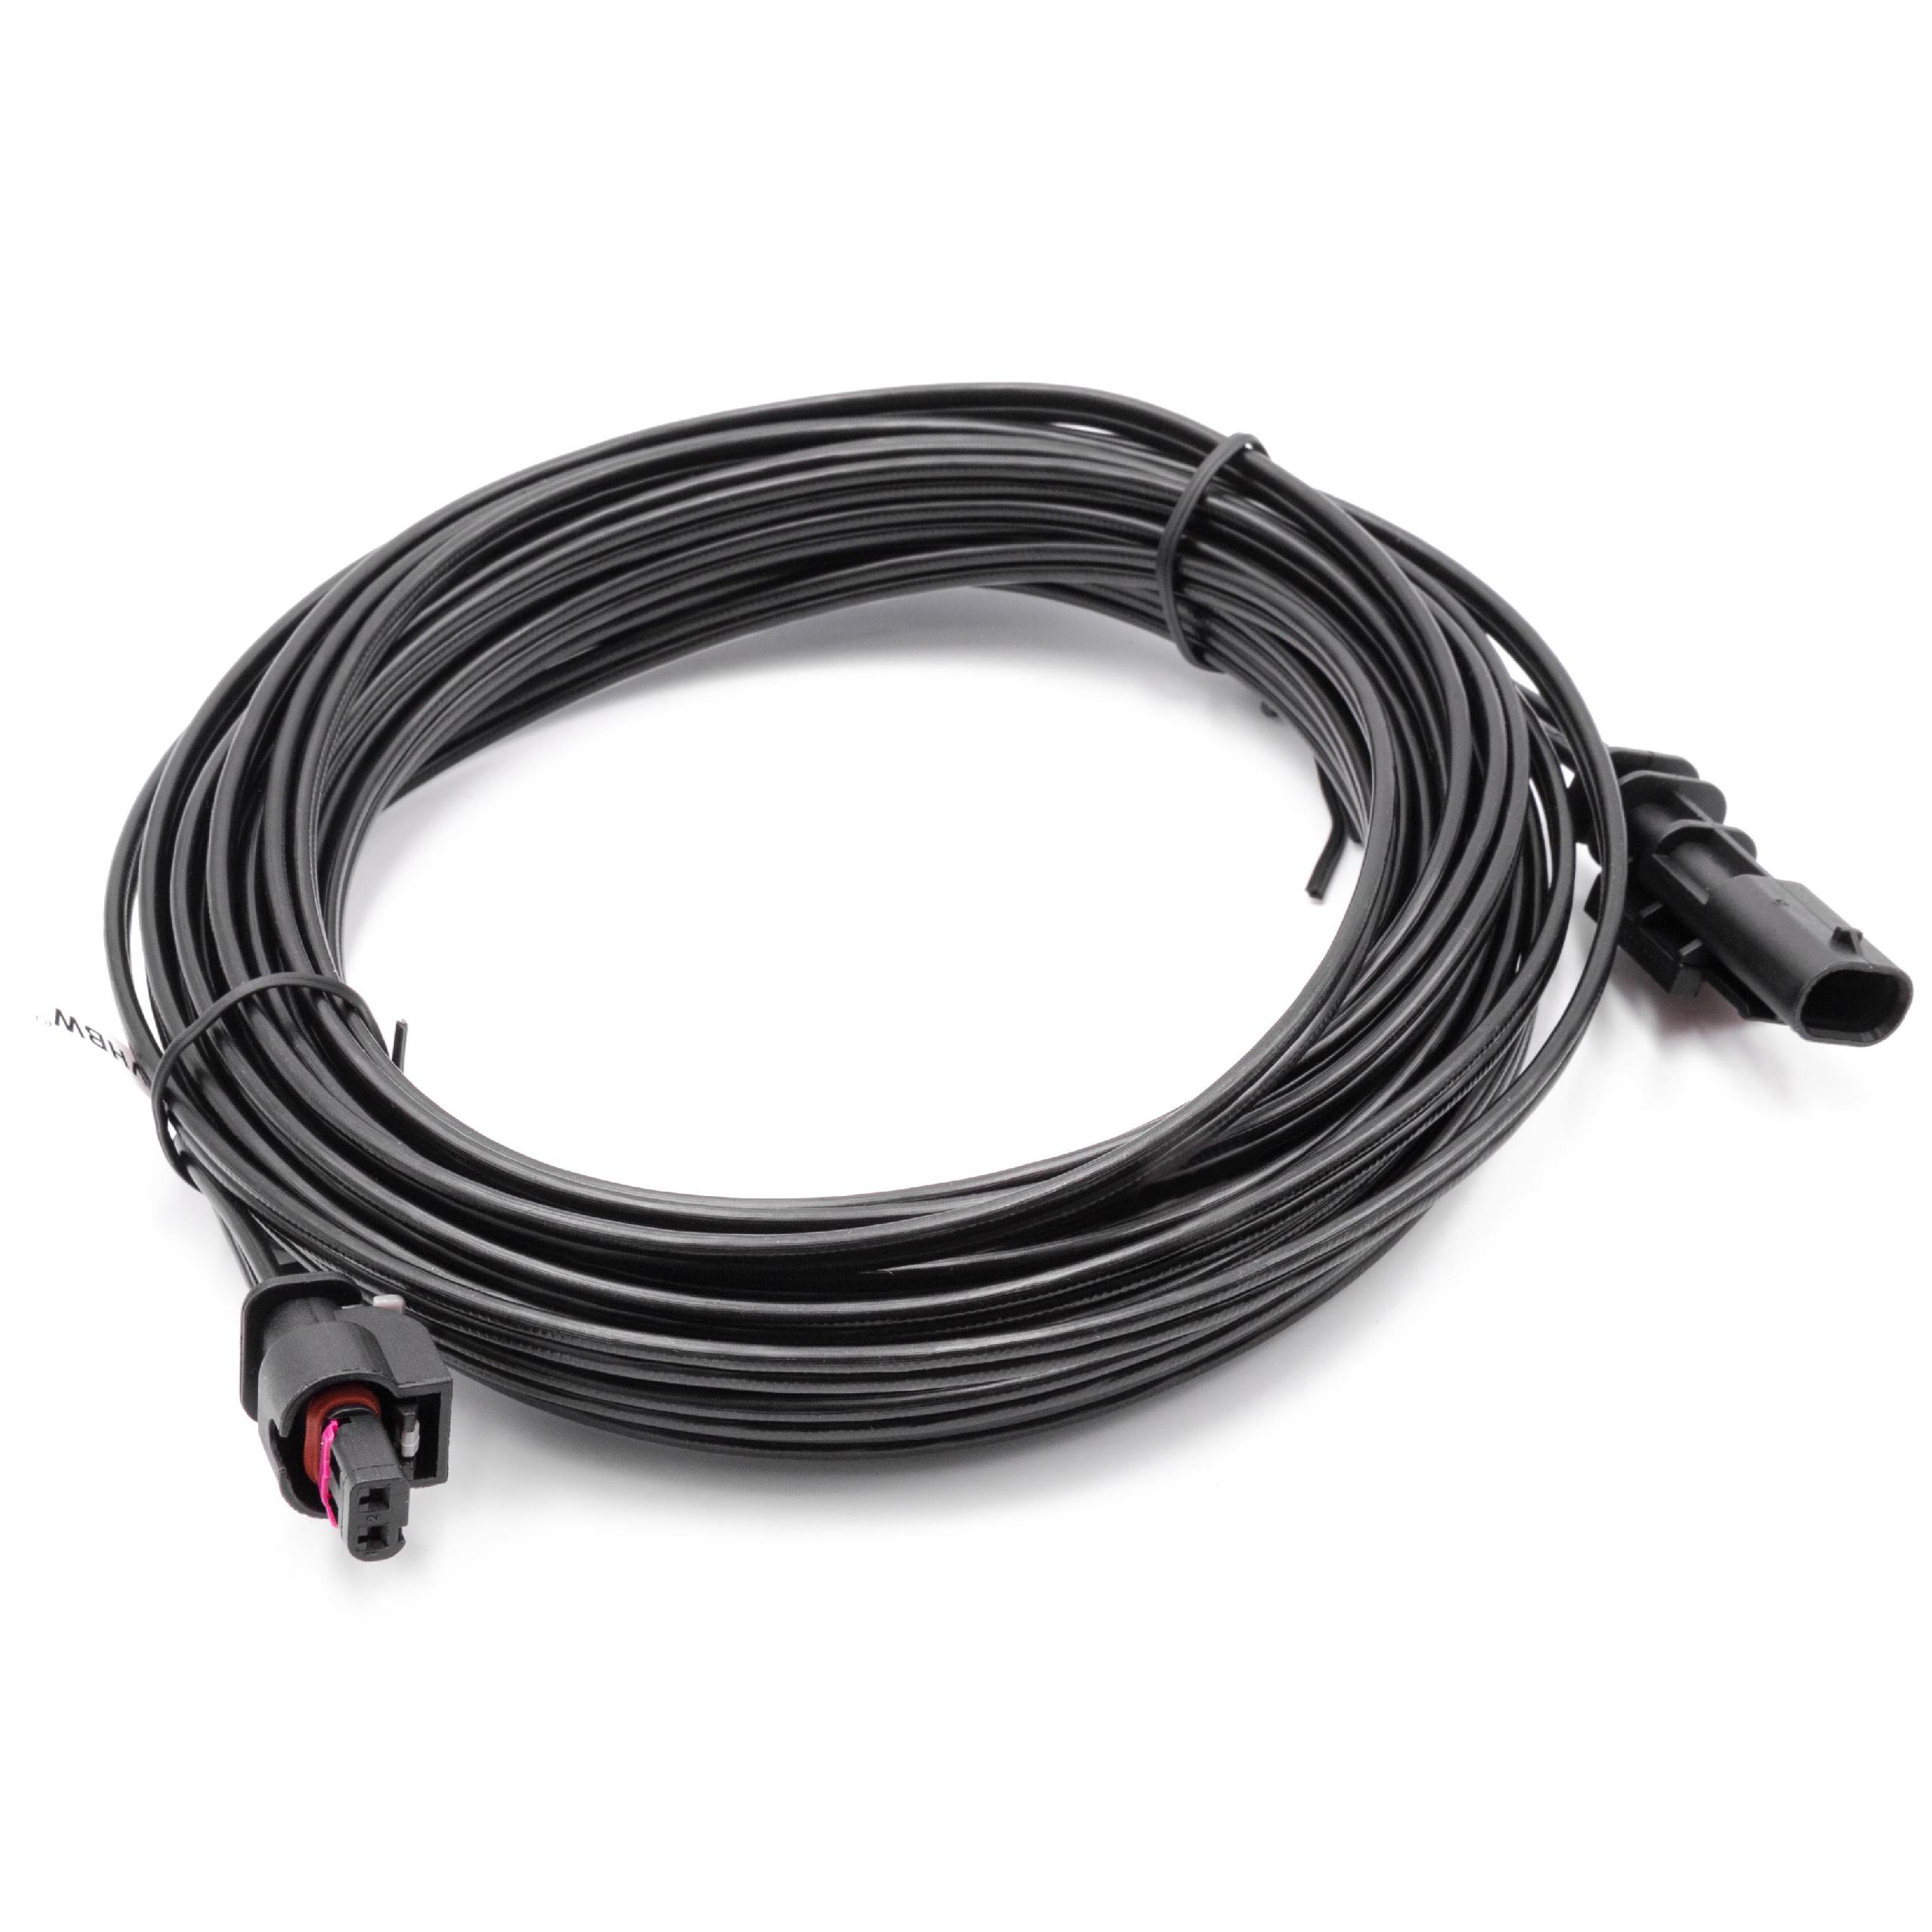 Câble de rechange pour Husqvarna 581 16 66-01, 581 16 66-03 pour robot tondeuse - Câble basse tension, 10 m